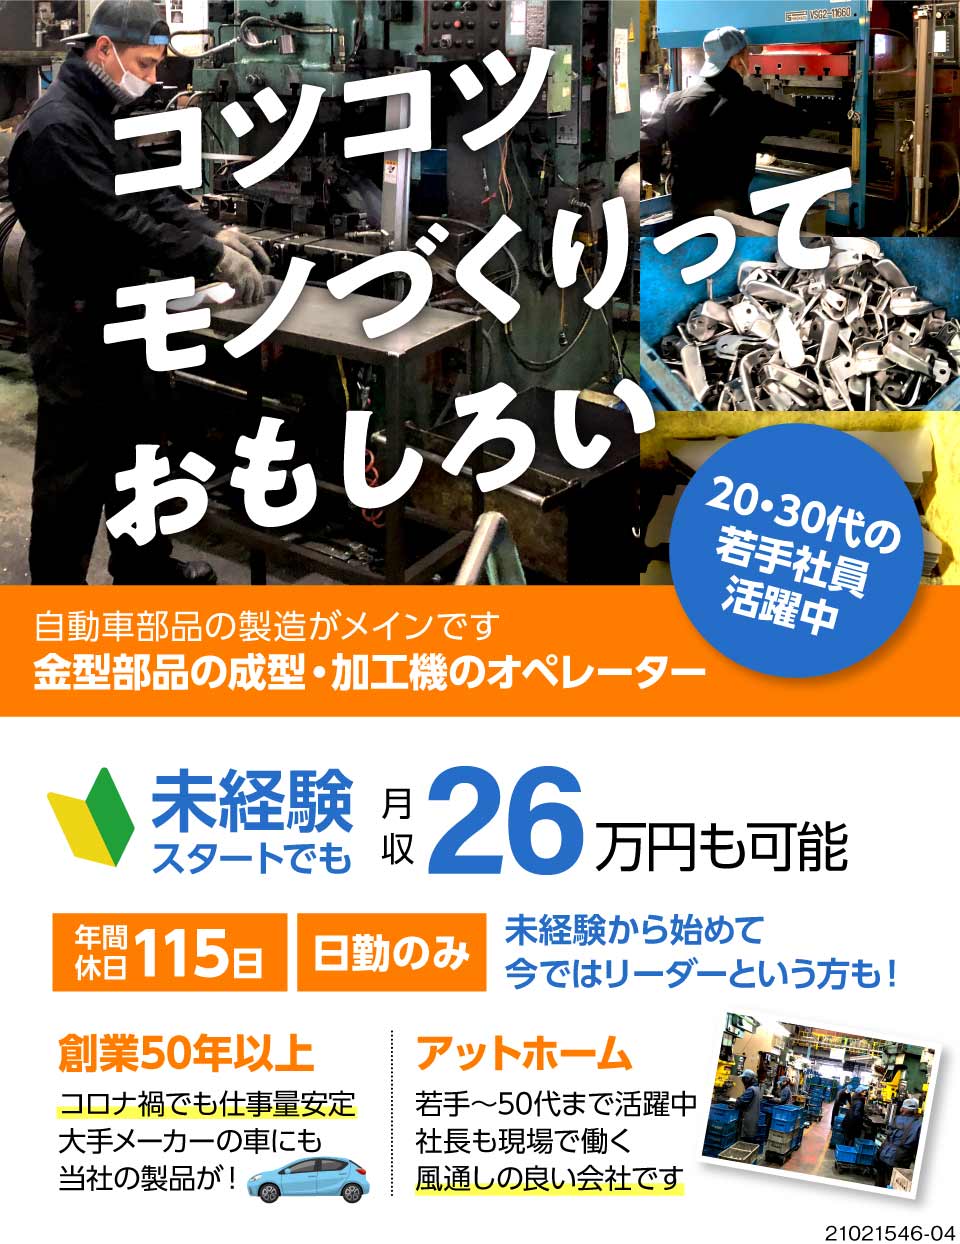 有限会社ヌカタ技研工業 愛知県岡崎市 ものづくりって楽しい 自分の作った部 工場求人のジョブコンプラス